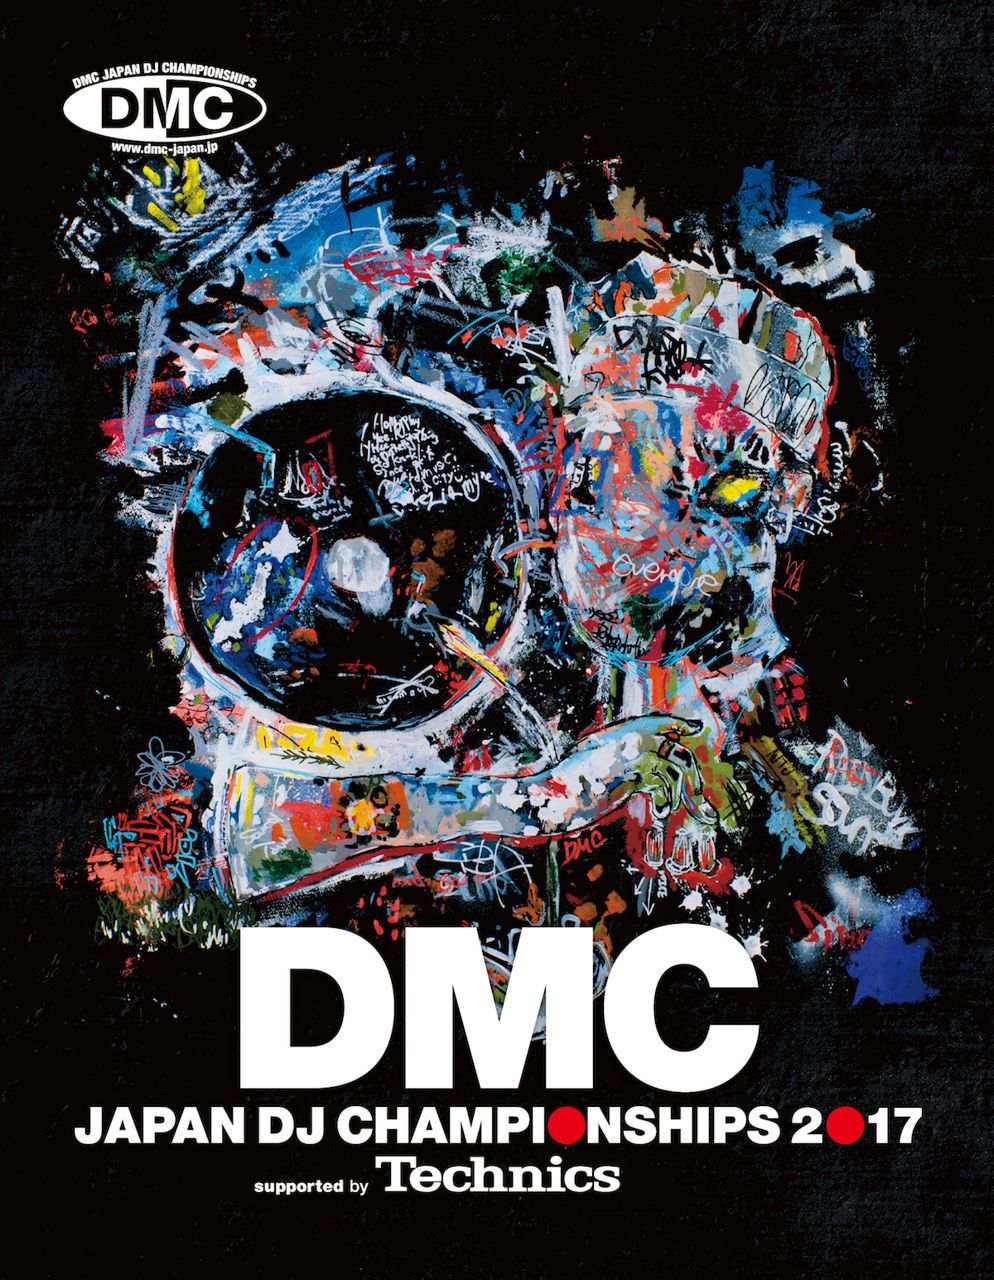 世界NO.1ターンテーブリストを決める「DMC WORLD DJ CHAMPIONSHIPS」開催決定！ 日本予選が全7都市で開催